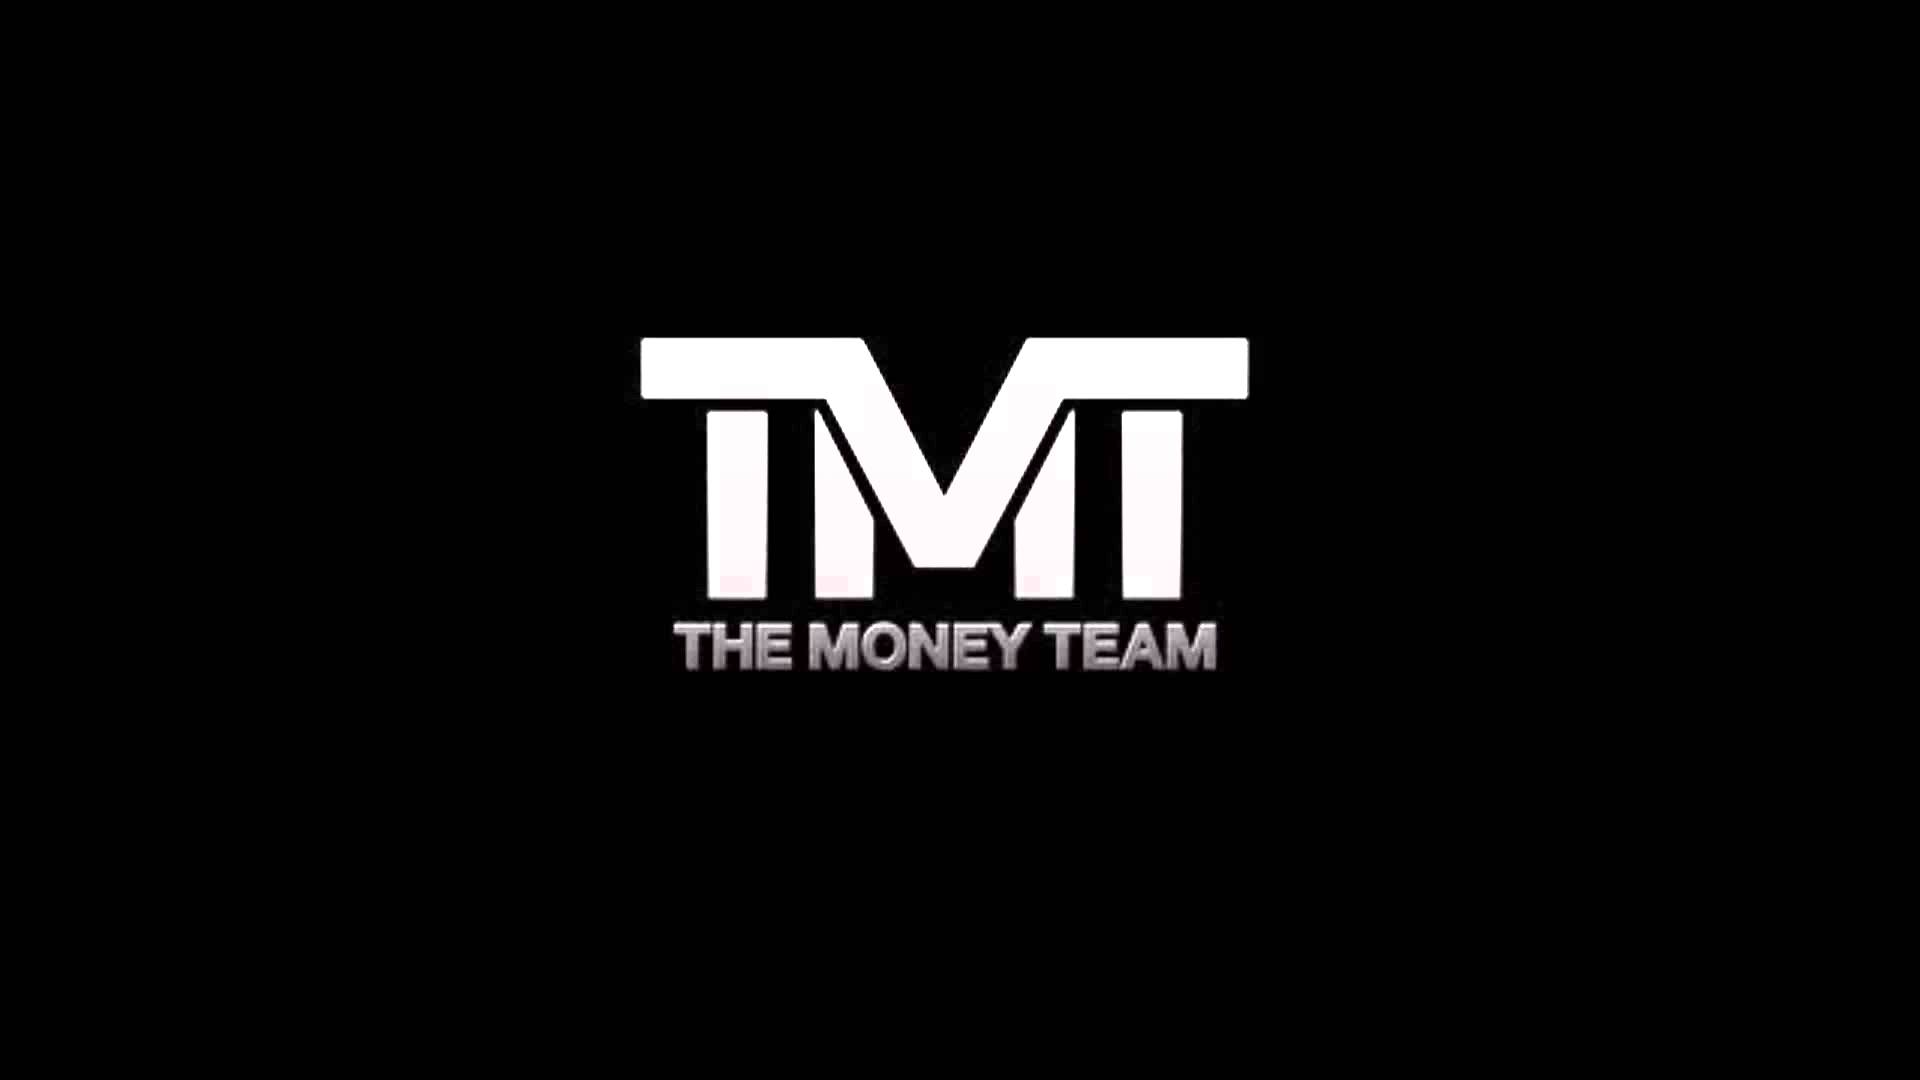 TMT Logo - TMT Wallpapers - Wallpaper Cave